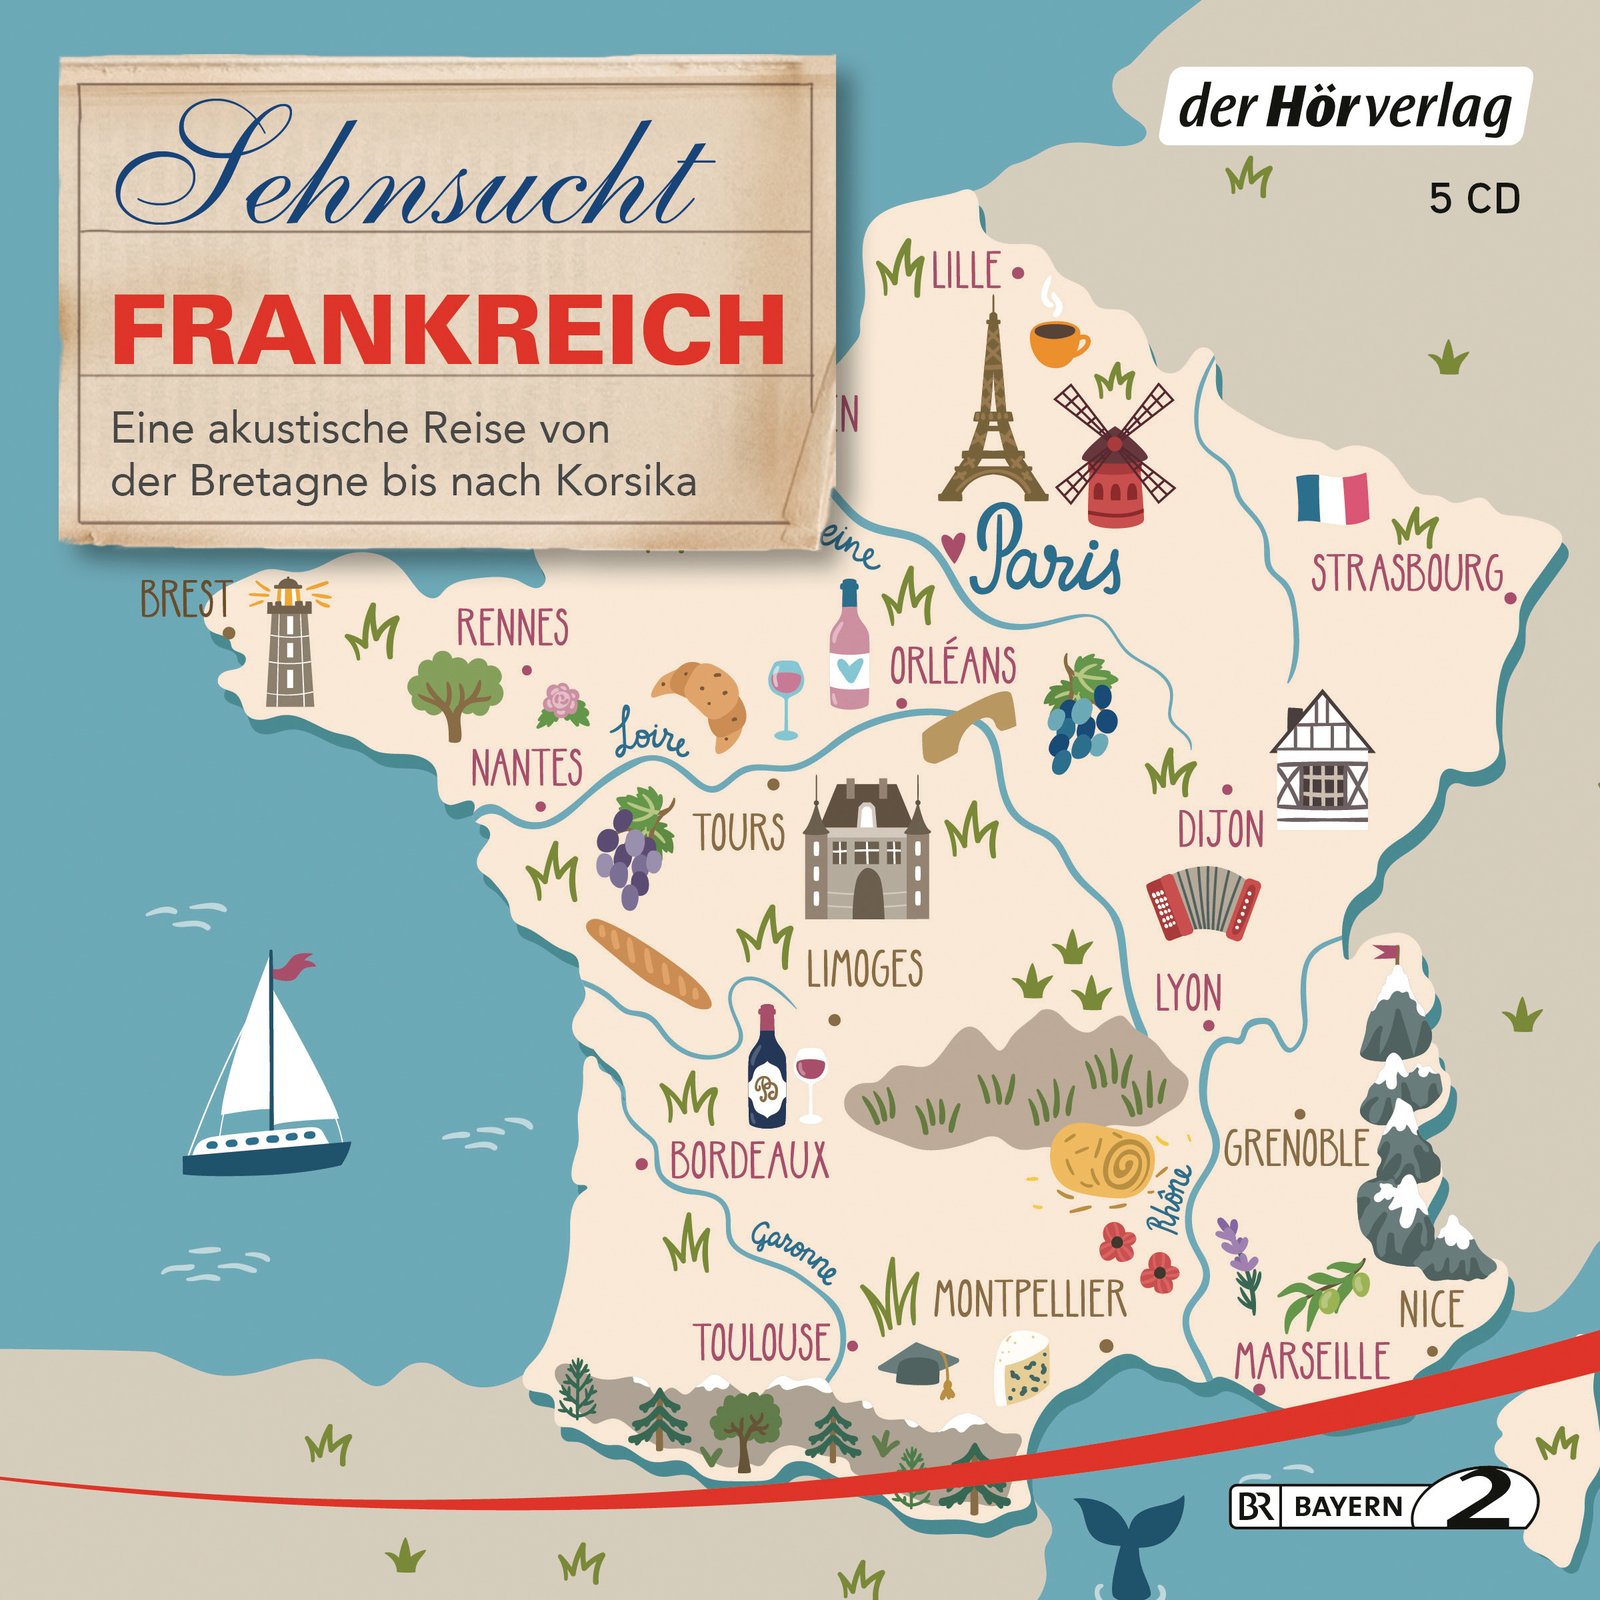 2019, sehnsucht frankreich, hörverlag, reise, alpen, exlibris